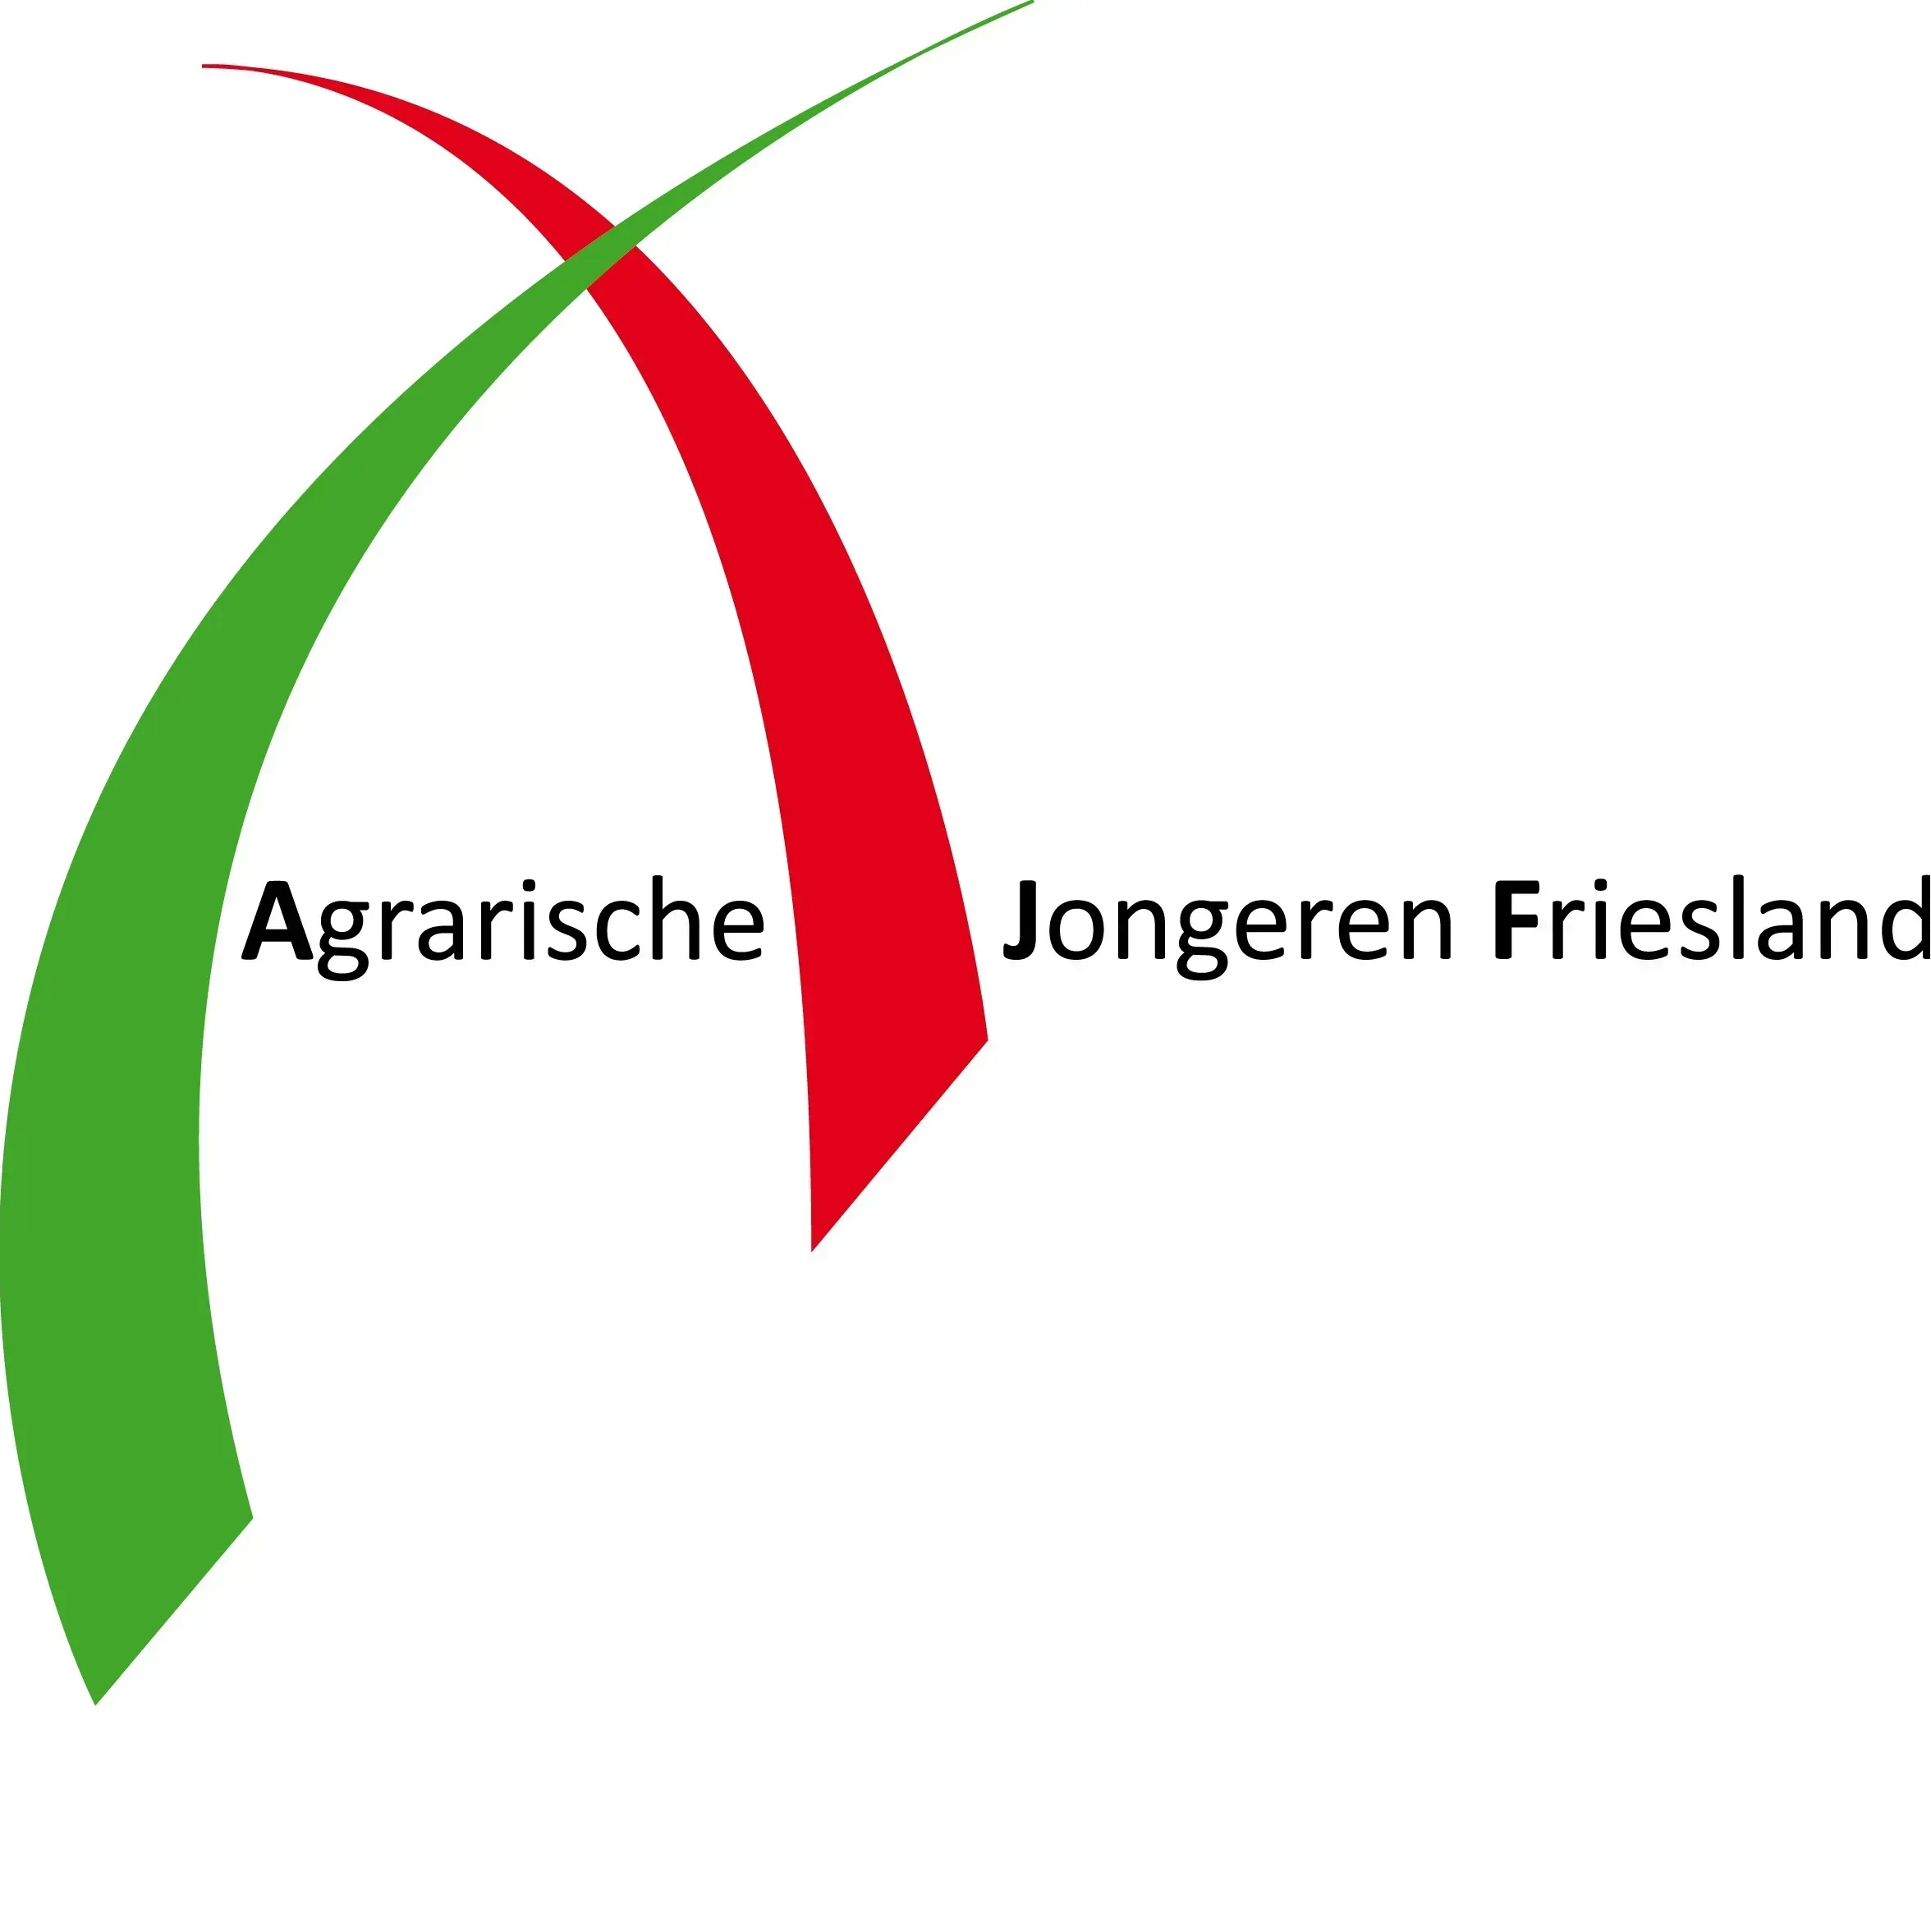 Agrarische Jongeren Friesland